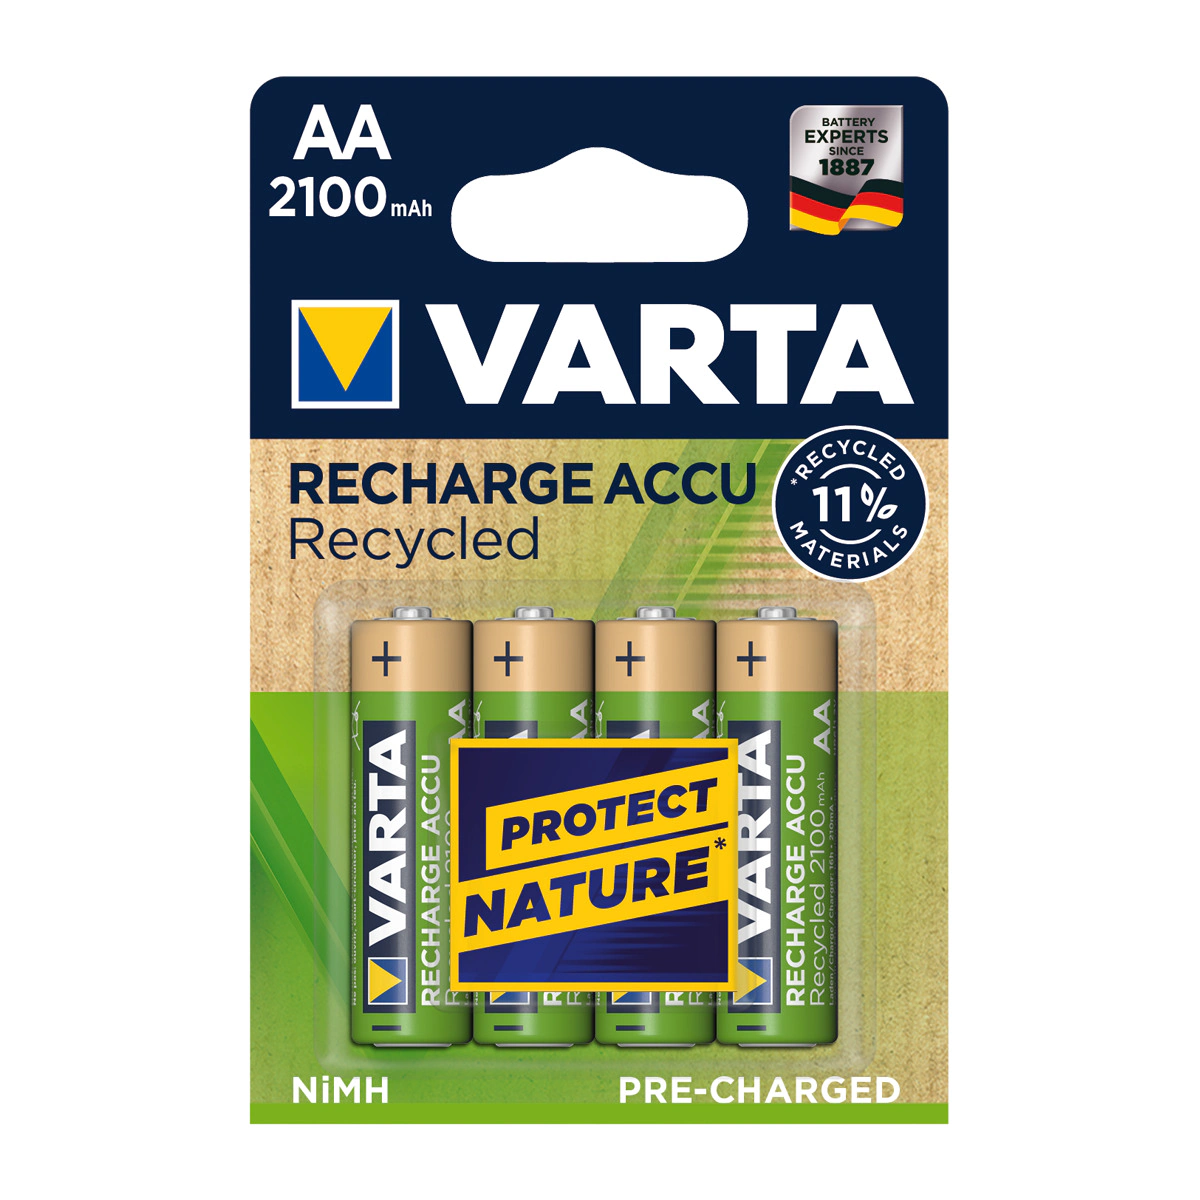 Pack de Pilas Varta Recargable Recycled AA (4 unidades)